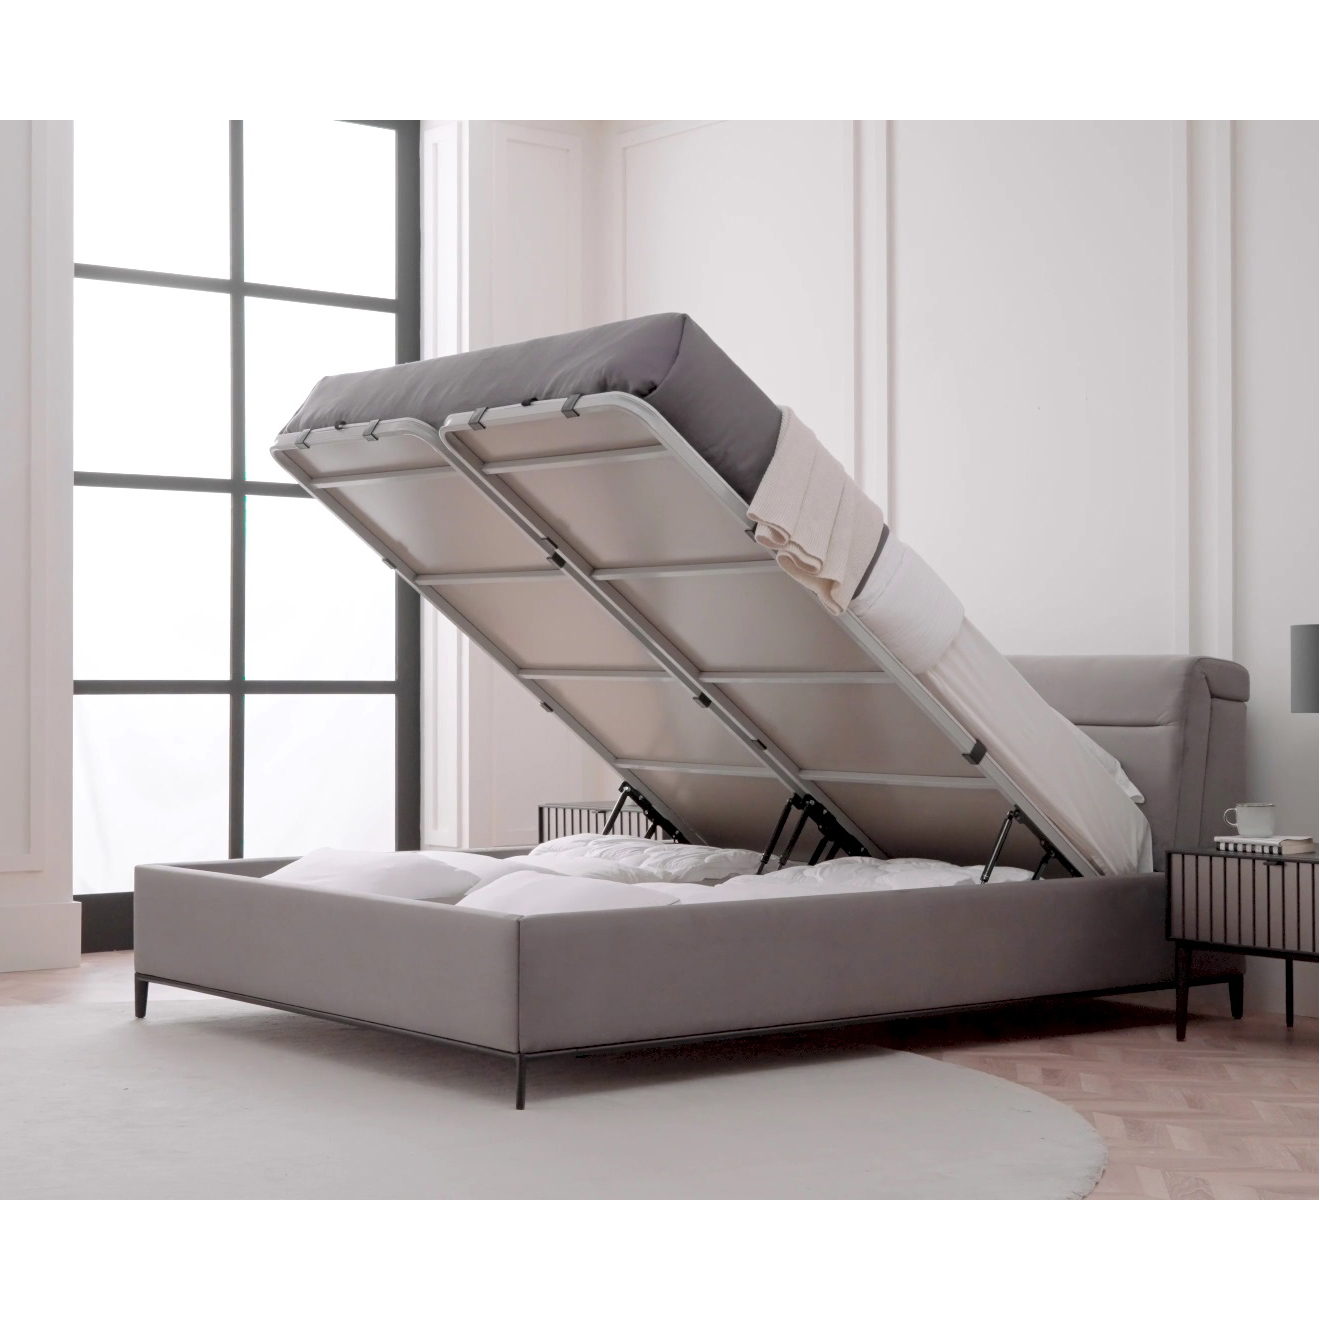 Кровать Enza Home Riga, двуспальная, с подъемным механизмом, 200х200 см